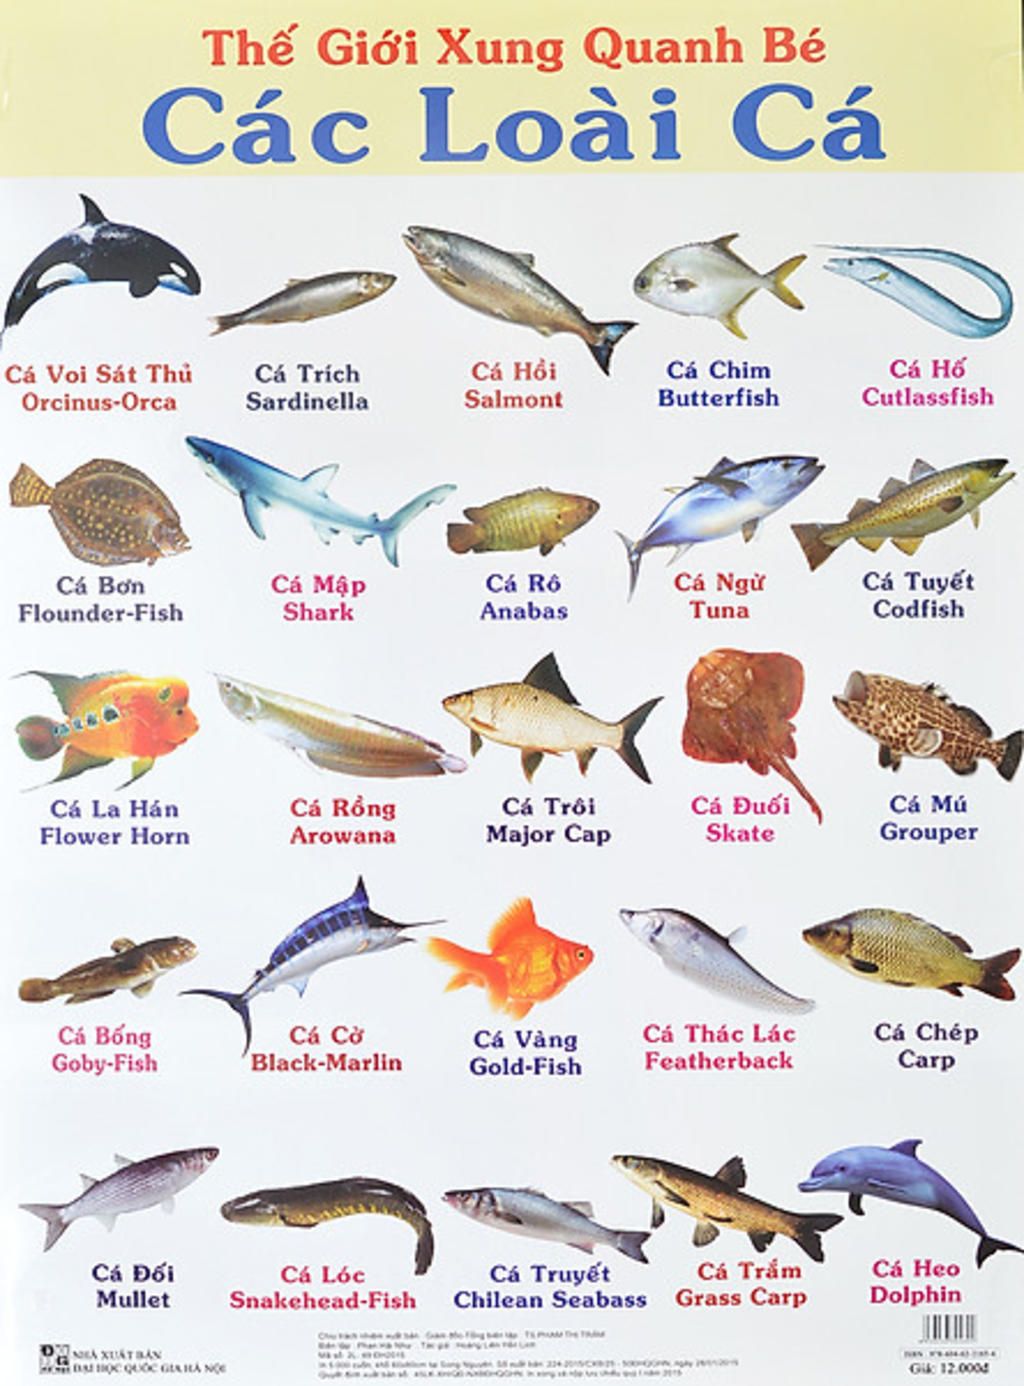 Sưu tầm thông tin và hình ảnh các loài cá để xây dựng bộ sưu tập ...